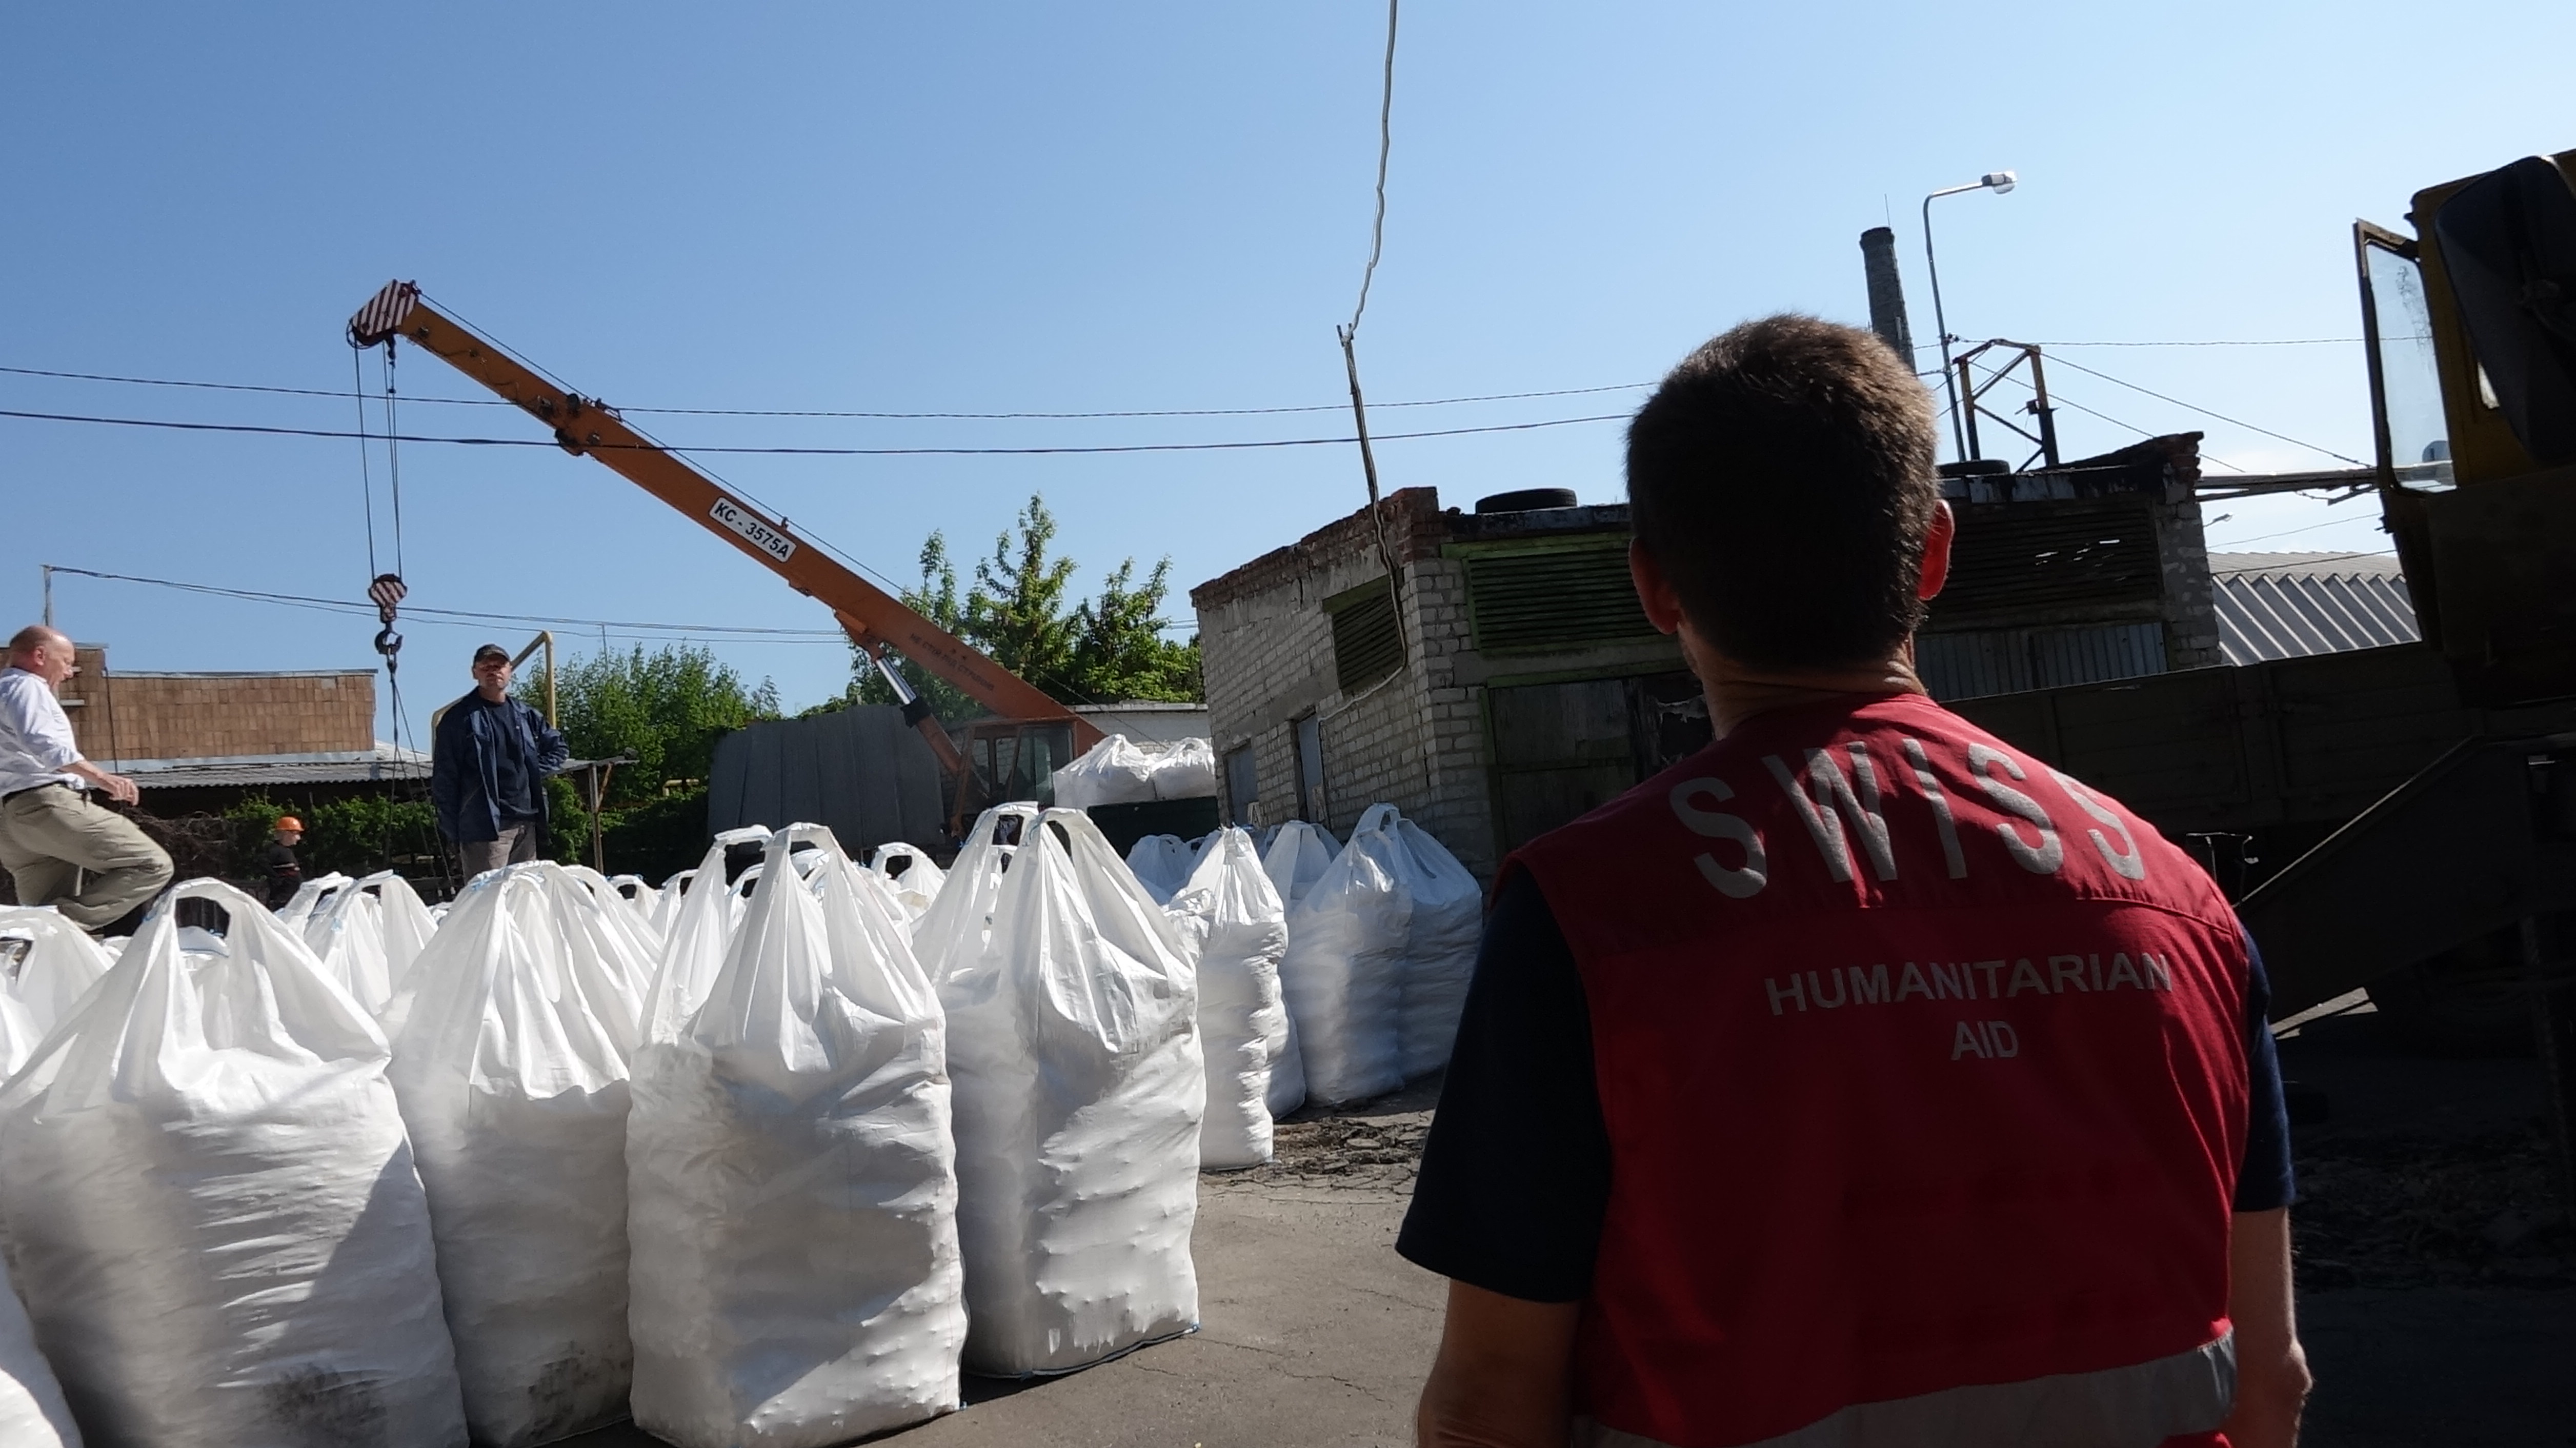 Arrivée à Donetsk du convoi humanitaire suisse pour l’Ukraine orientale. La Suisse a envoyé un convoi chargé de 300 tonnes de produits chimiques pour le traitement de l’eau potable.